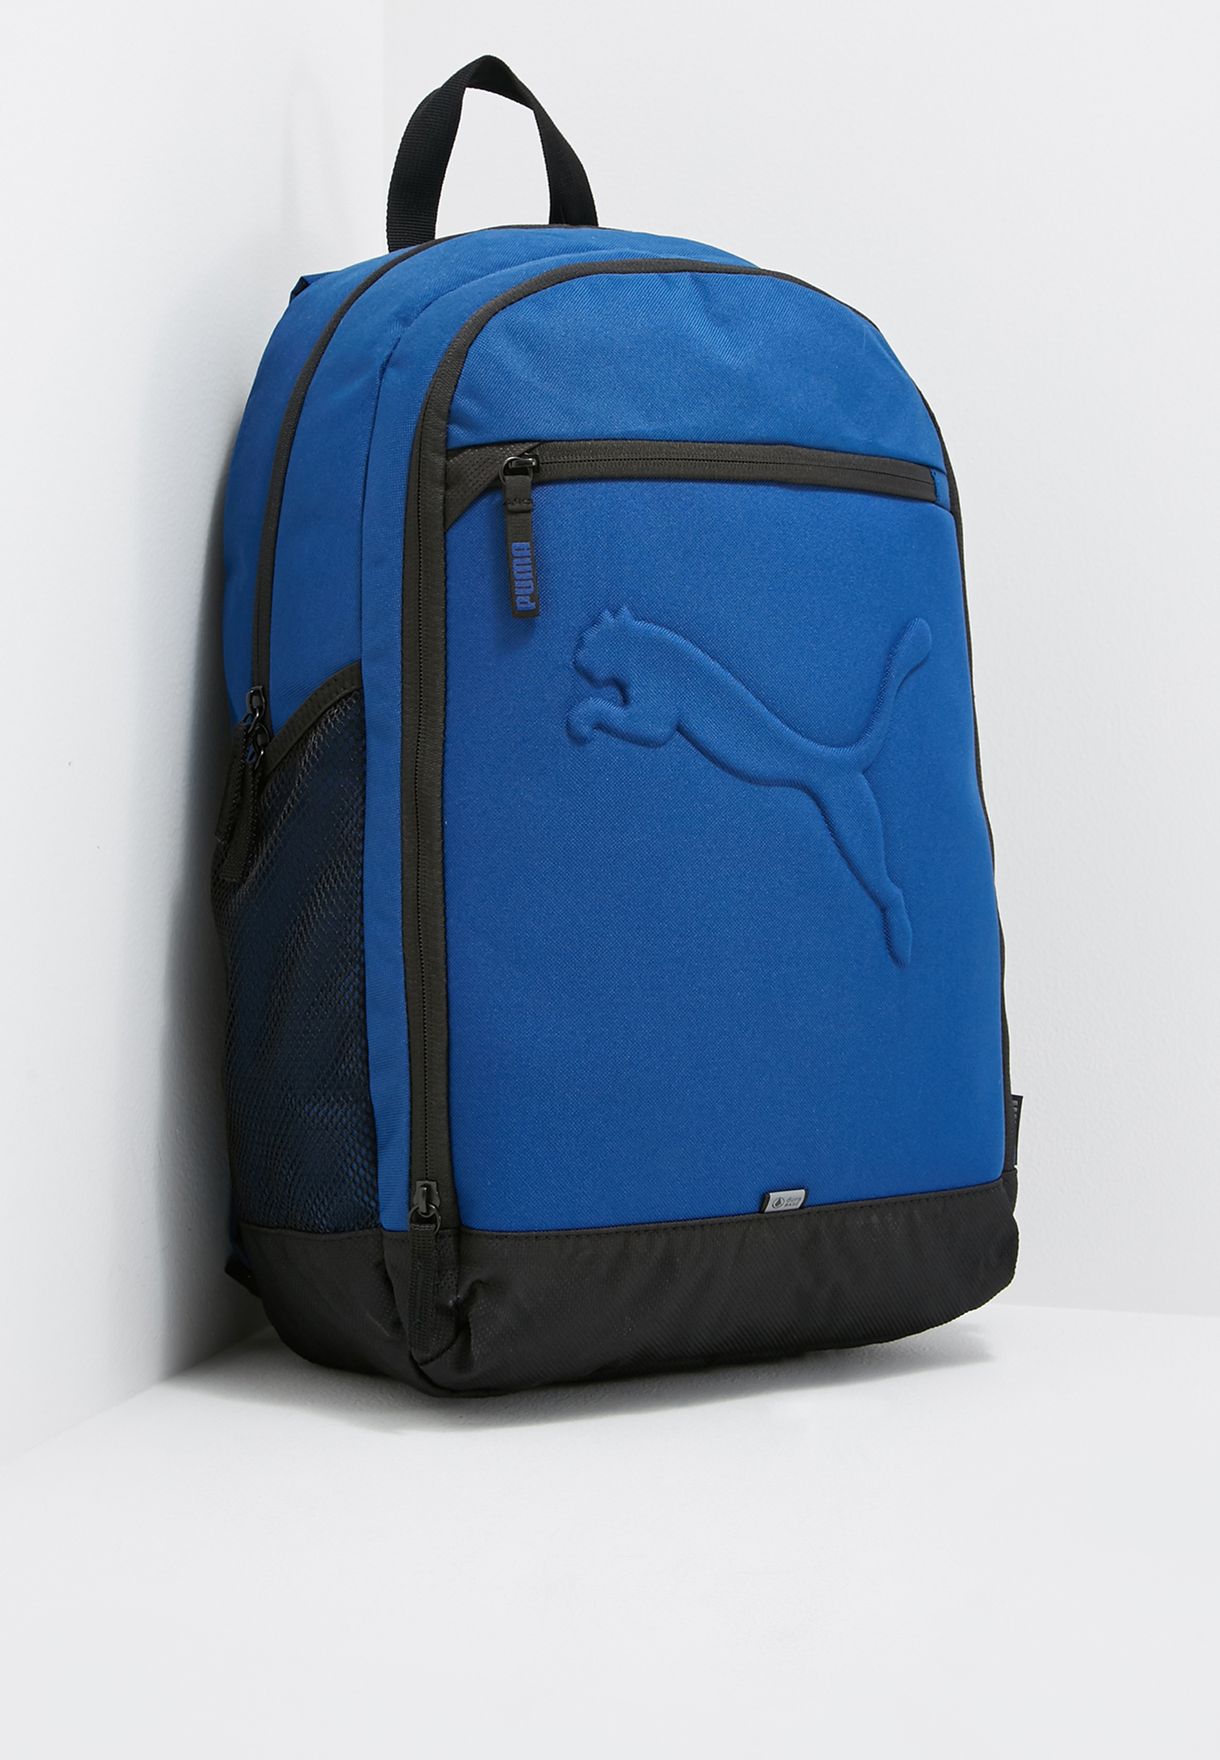 puma blue bag